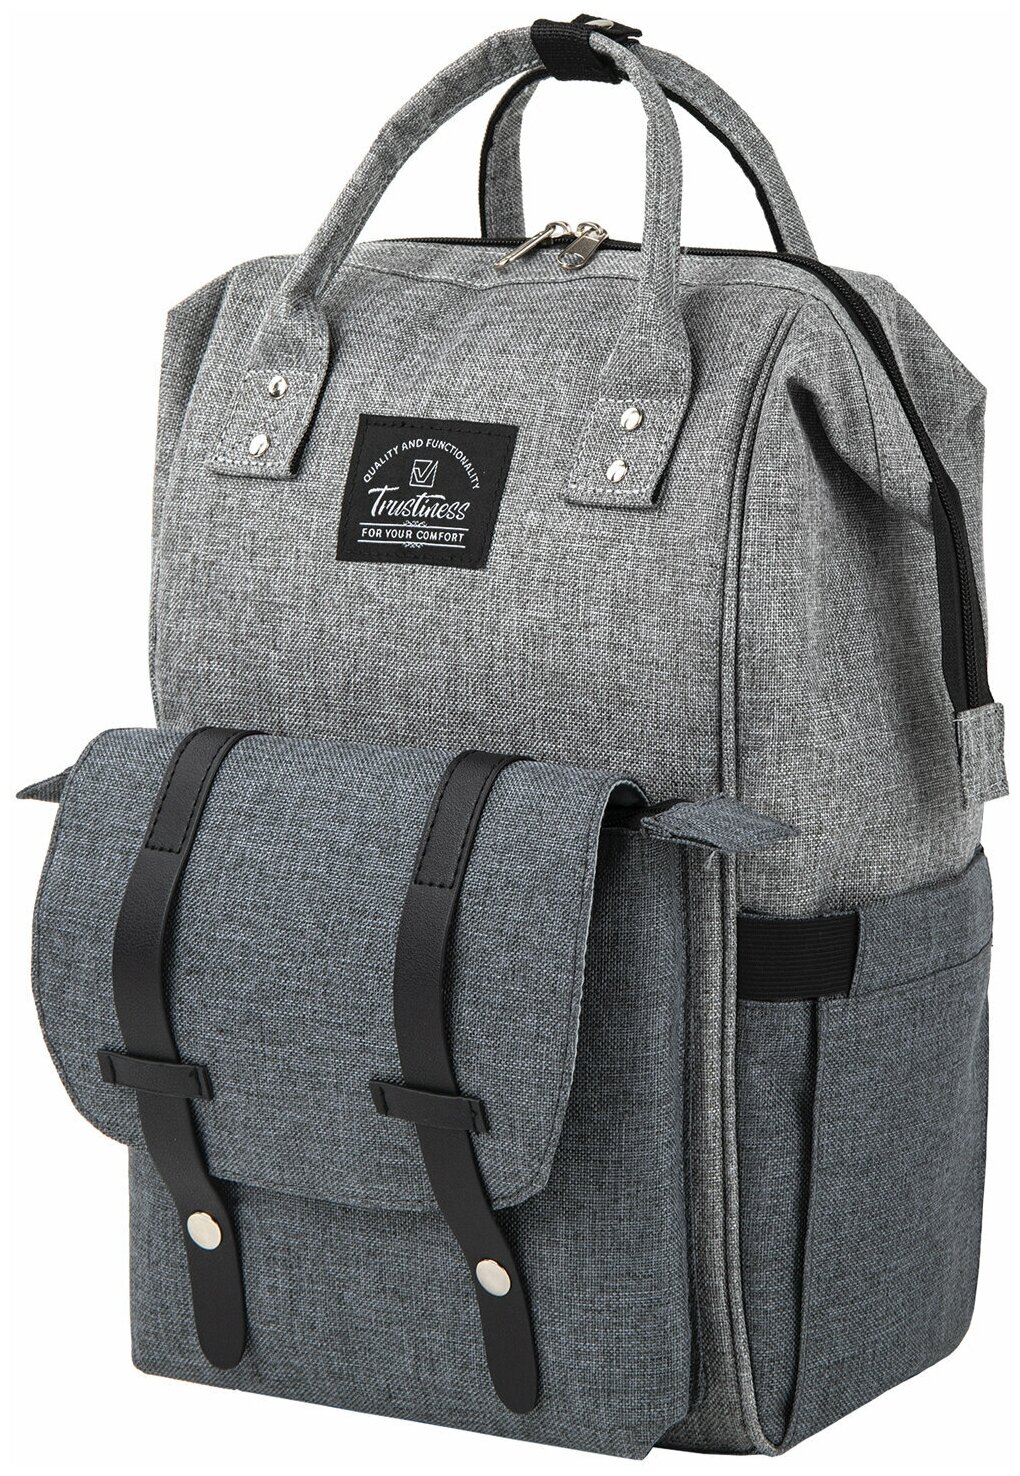 Рюкзак / сумка женский для мамы и малыша / для коляски / беременных / школьный Brauberg Mommy крепления для коляски термокарманы серый 41x24x17см